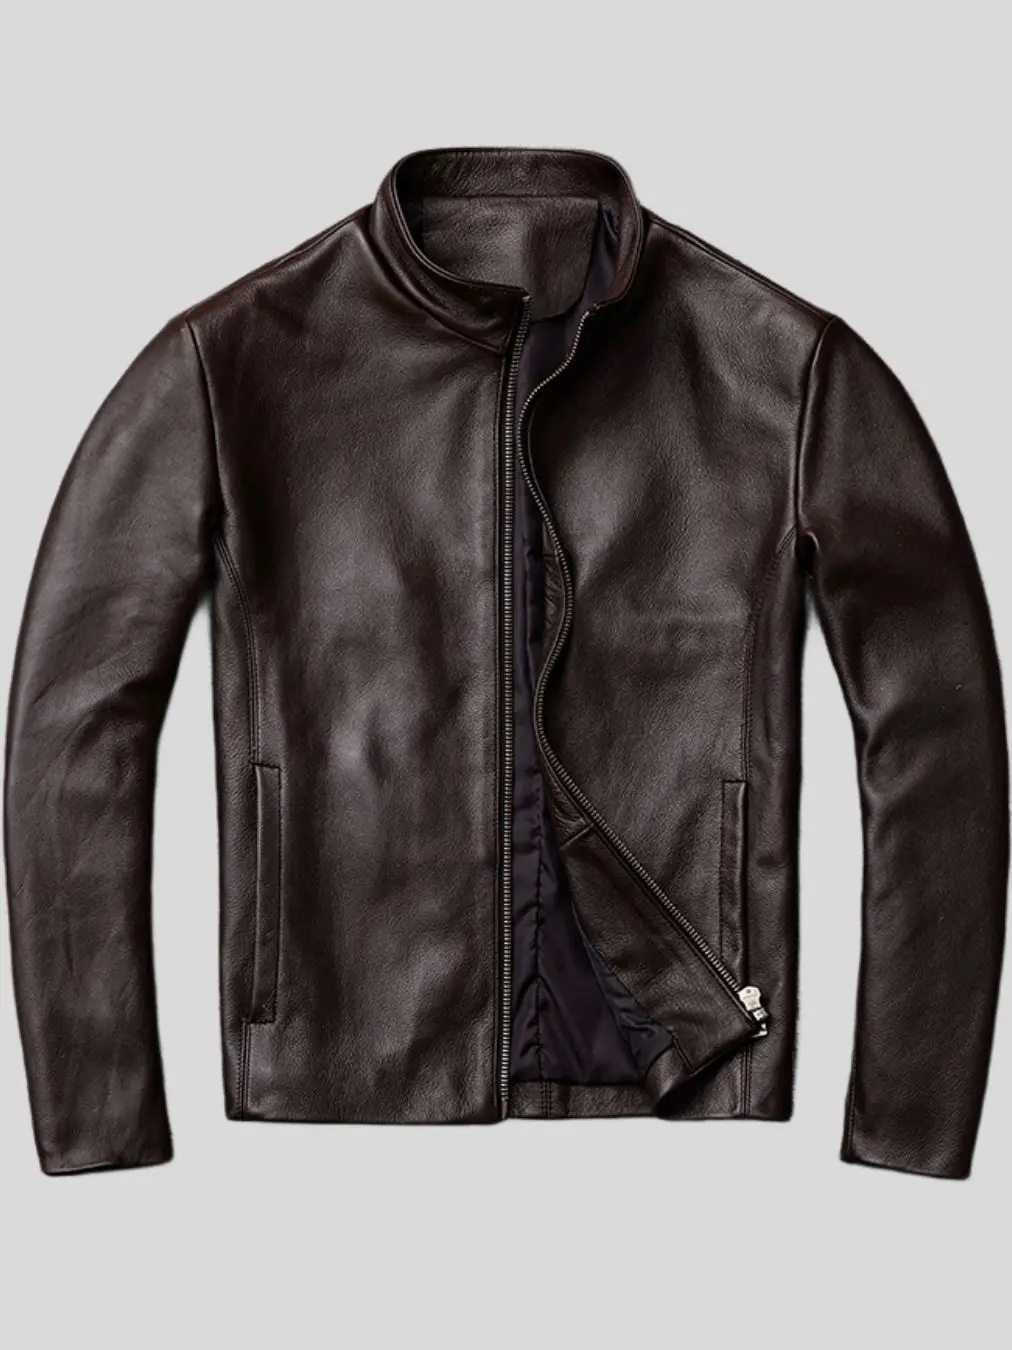 Men’s Dark Brown Leather Jacket: Ross